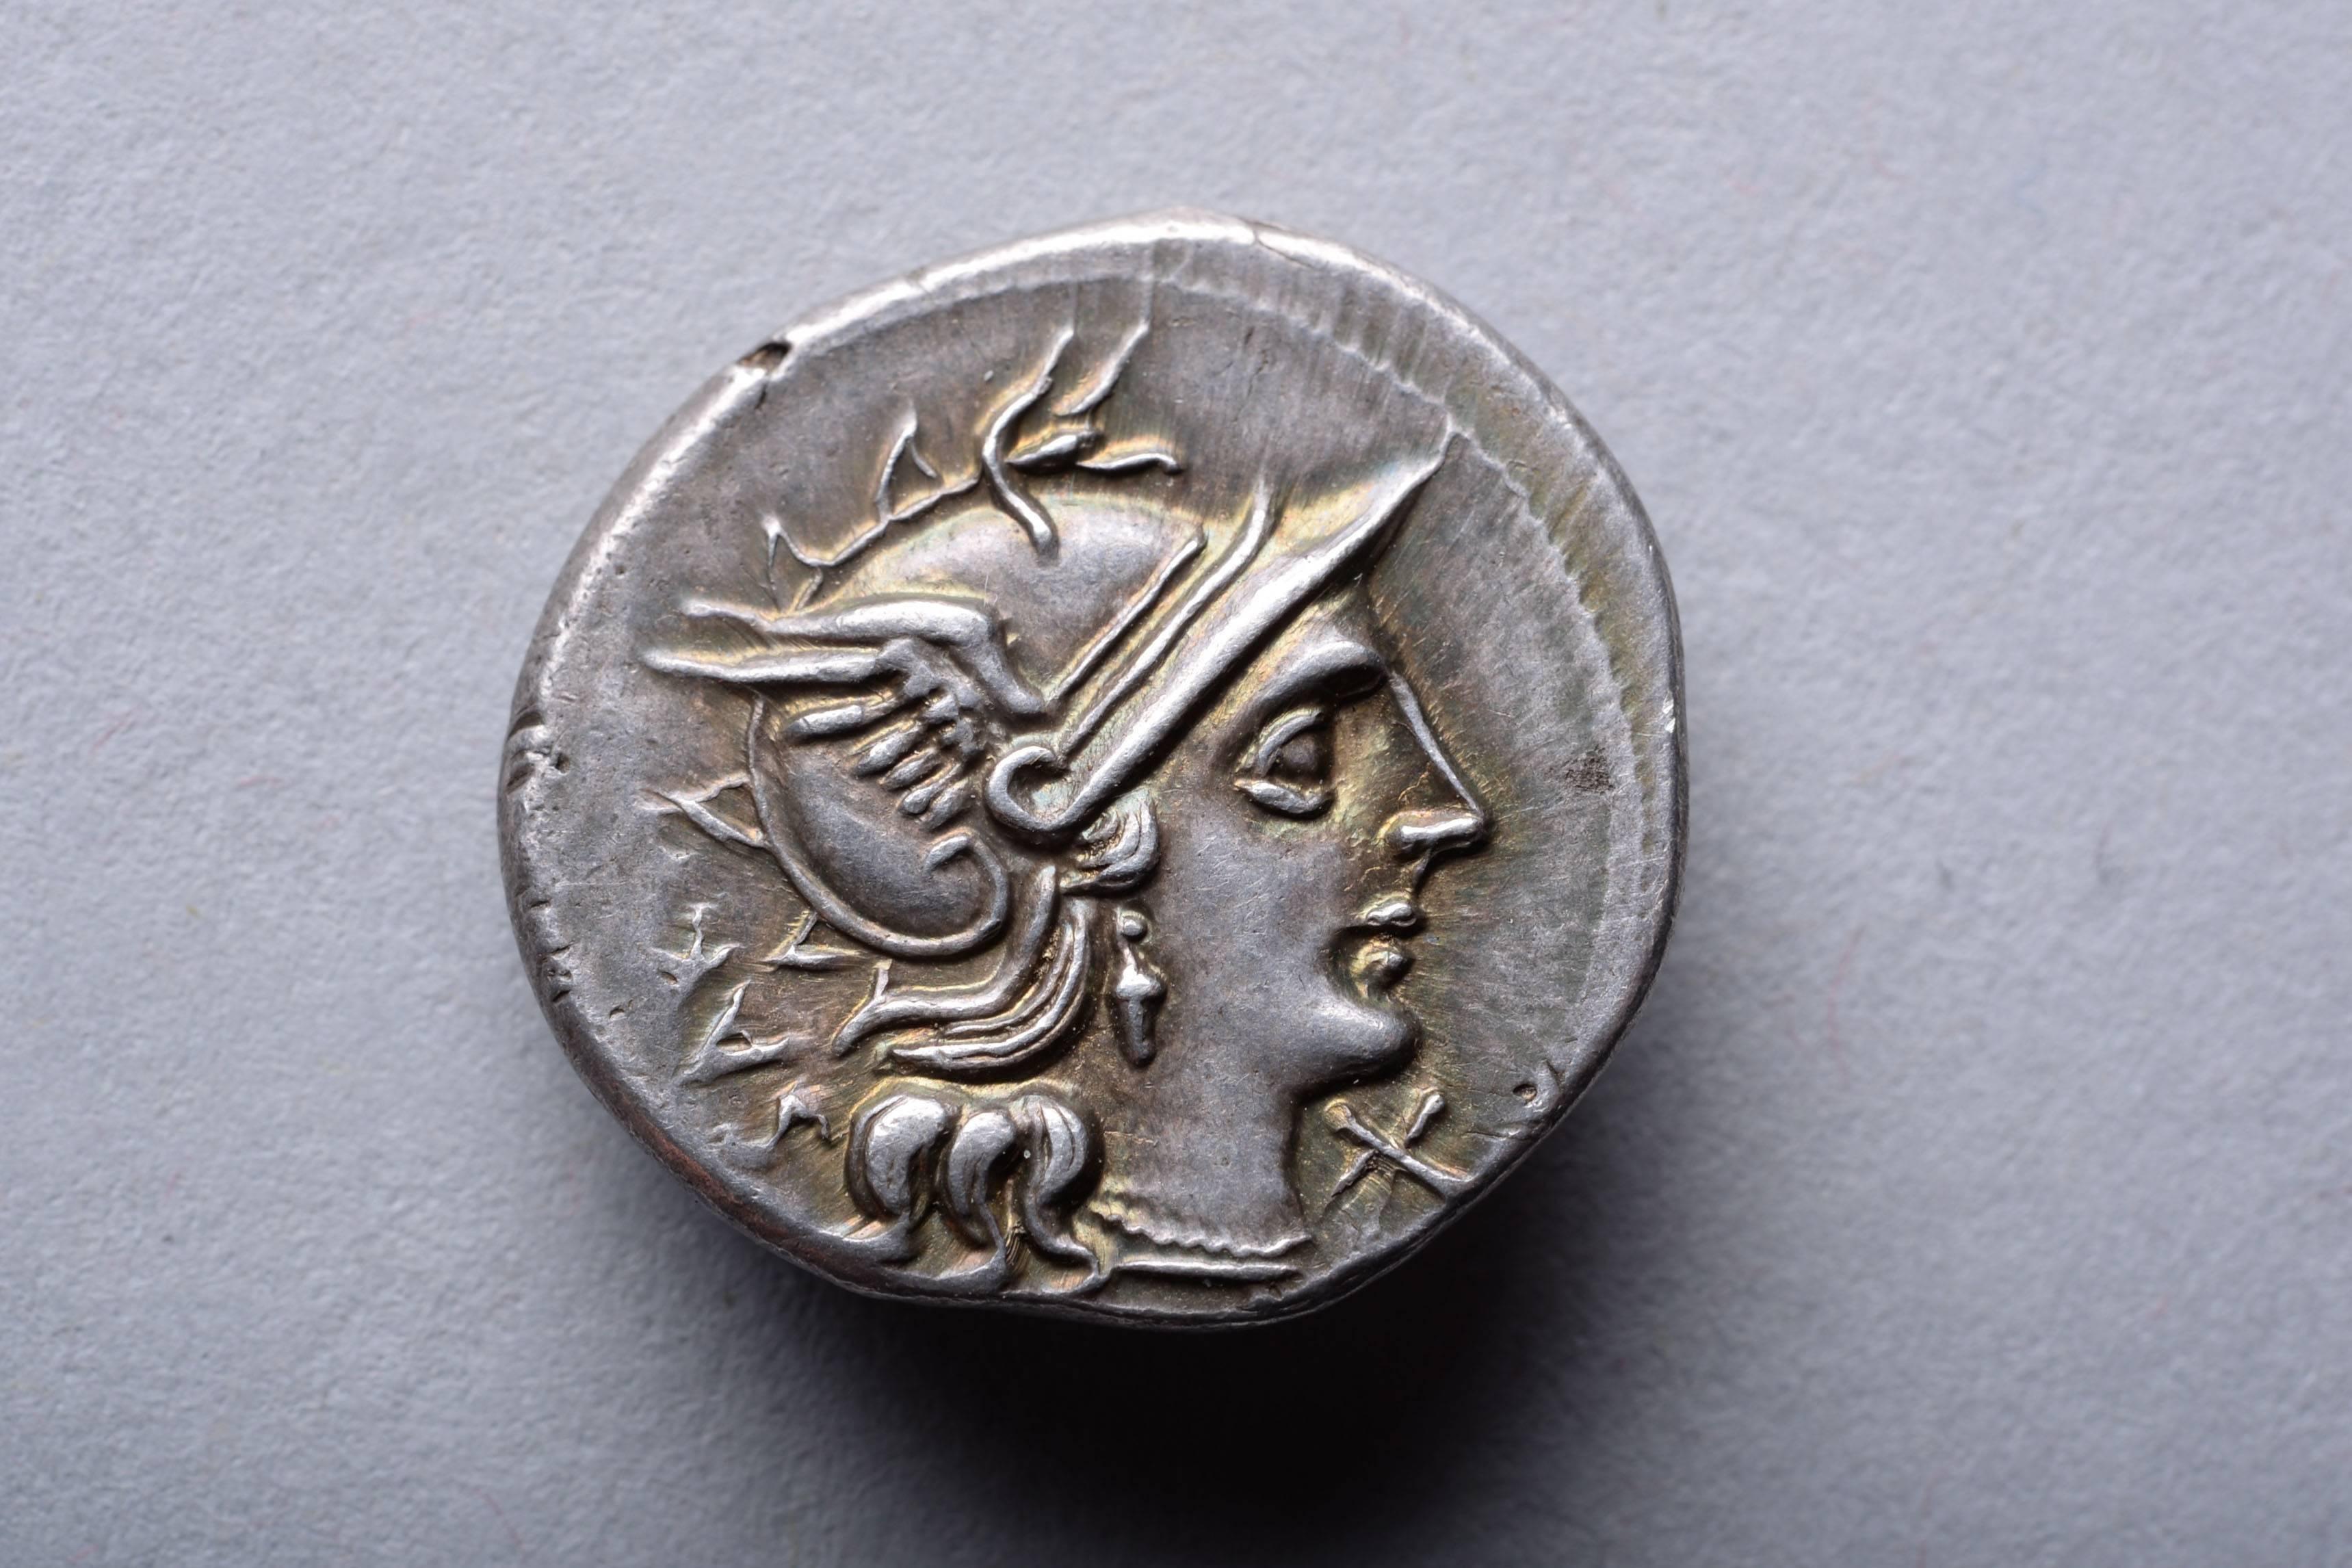 Classical Roman Roman Republican Denarius of Marcus Atilius Serranus, 148 BC